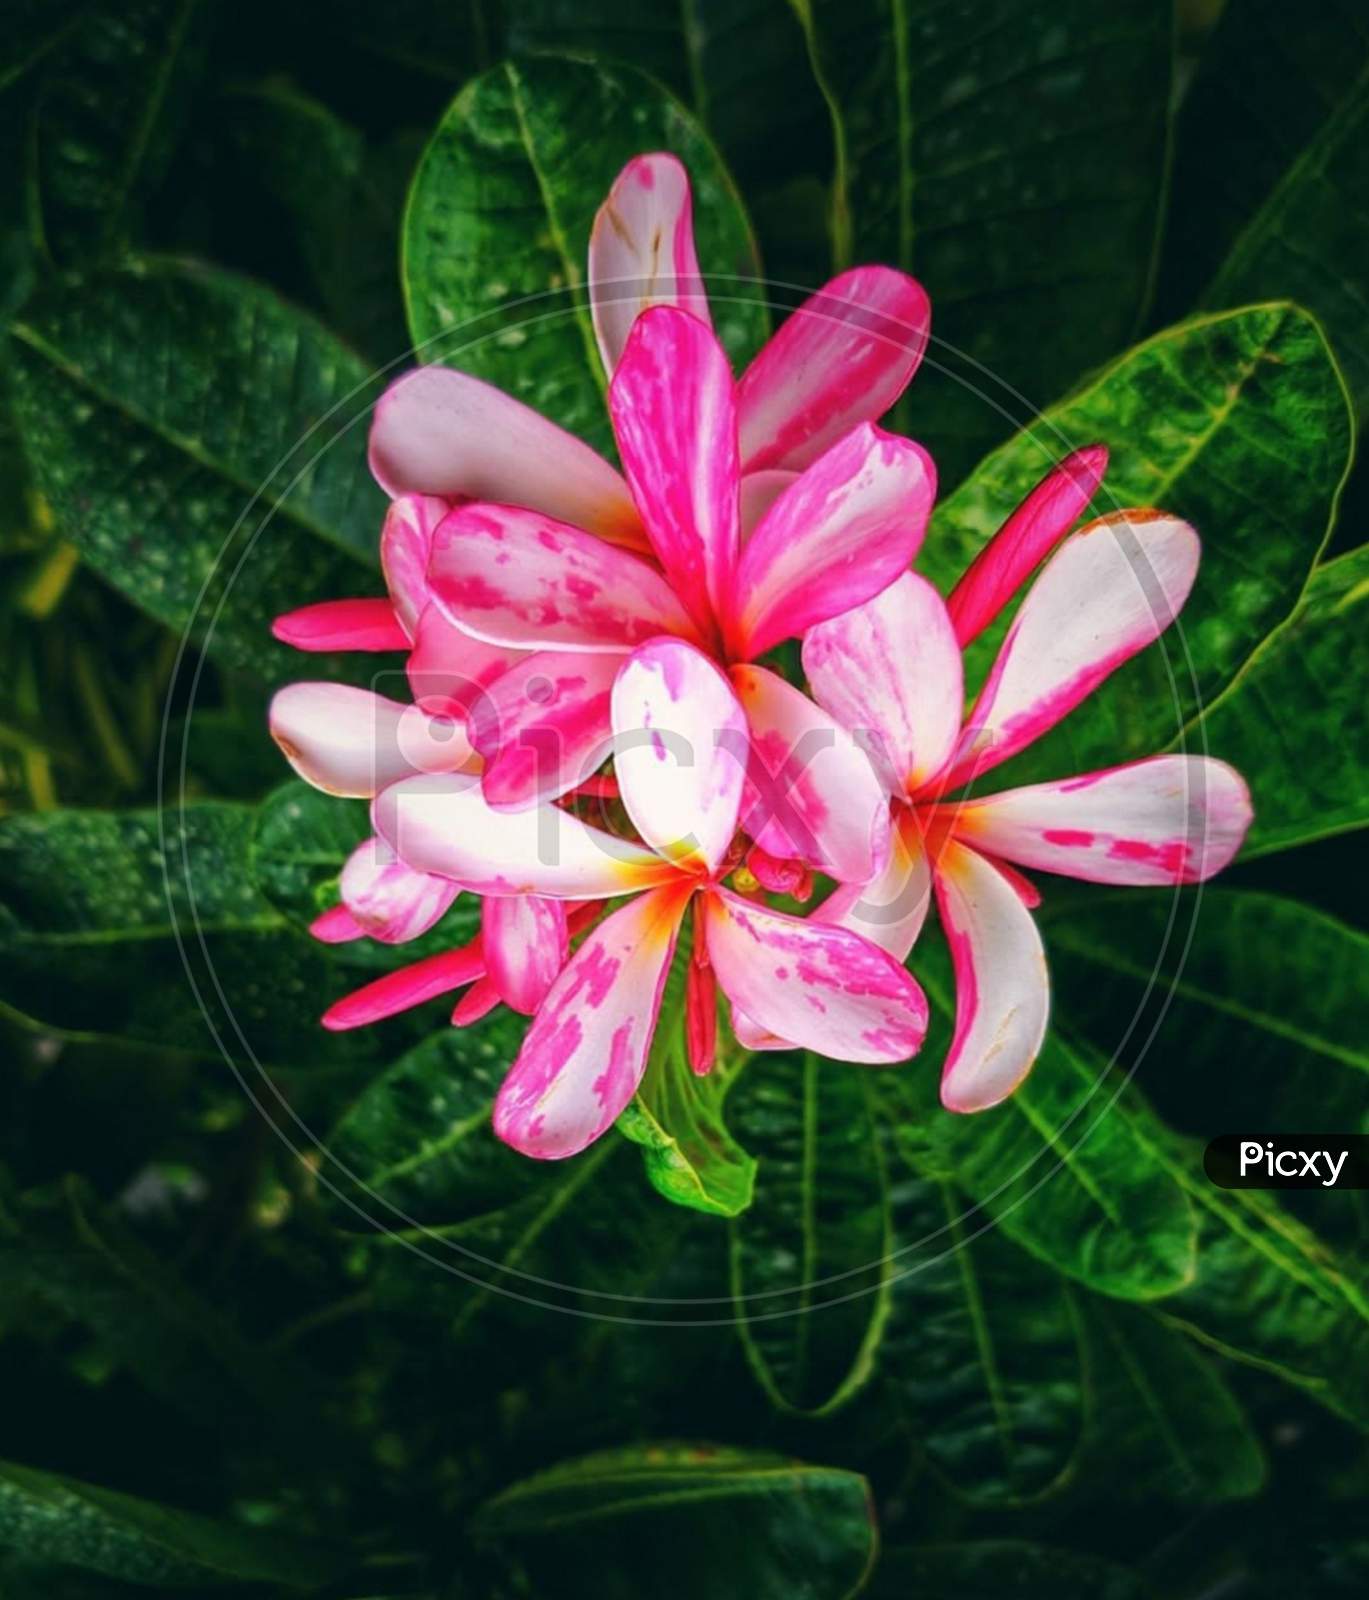 Perennial plant×Remove  frangipani×Remove  Botany×Remove  Flowering plant×Remove  Pink×Remove  Petal×Remove  Plant×Remove  Flower×Remove  Wildflower×Remove